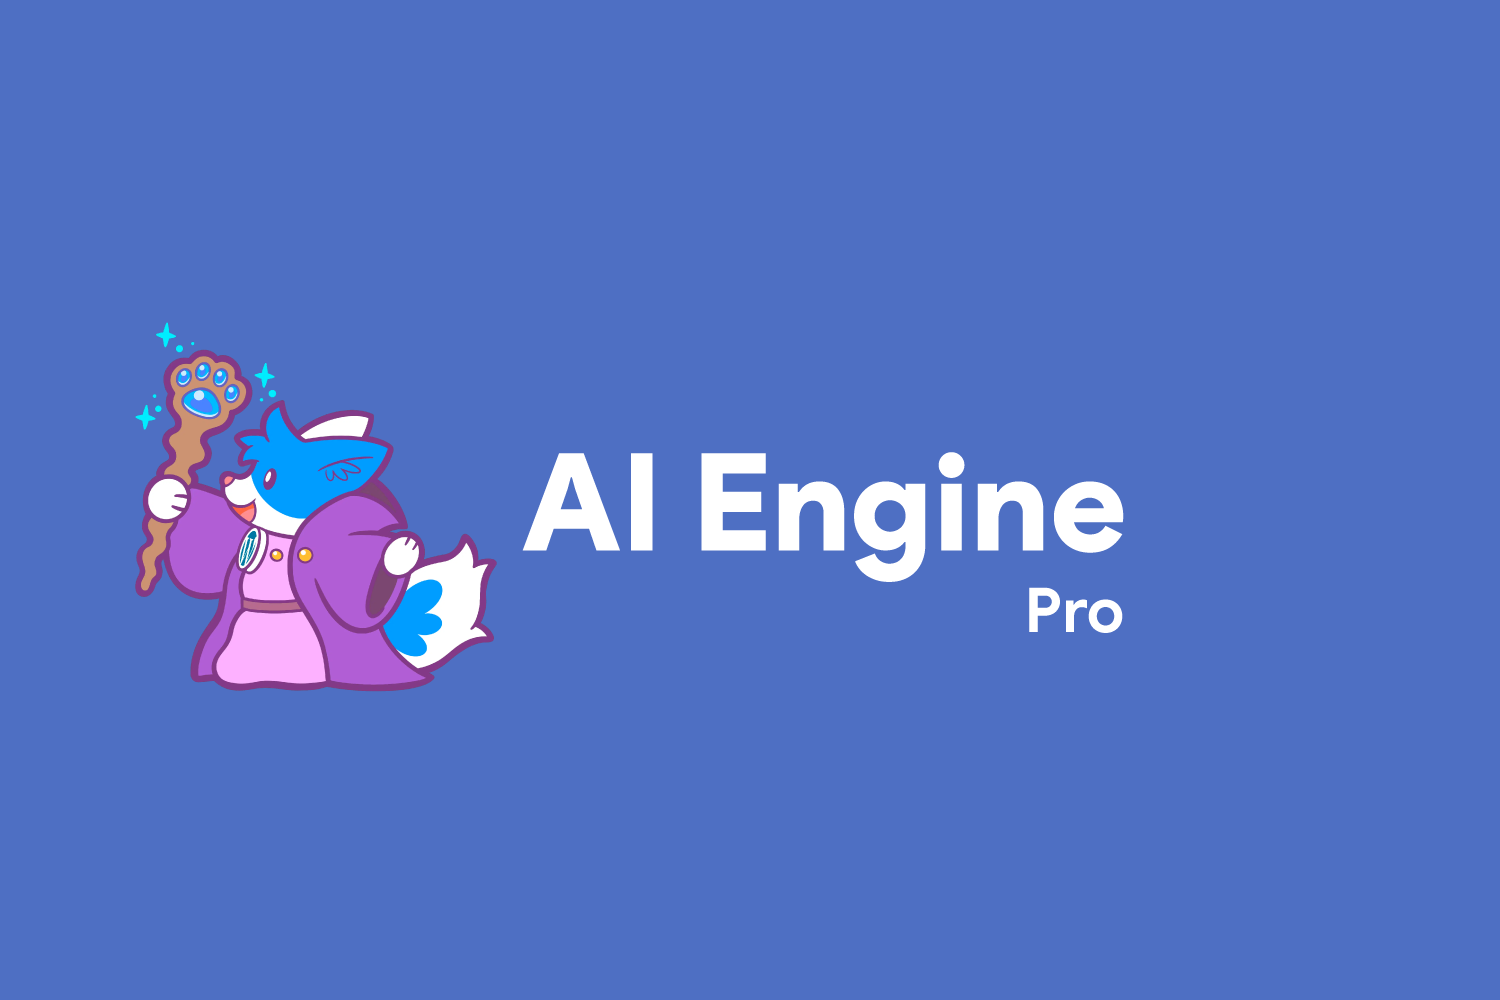 Image AI Engine Pro